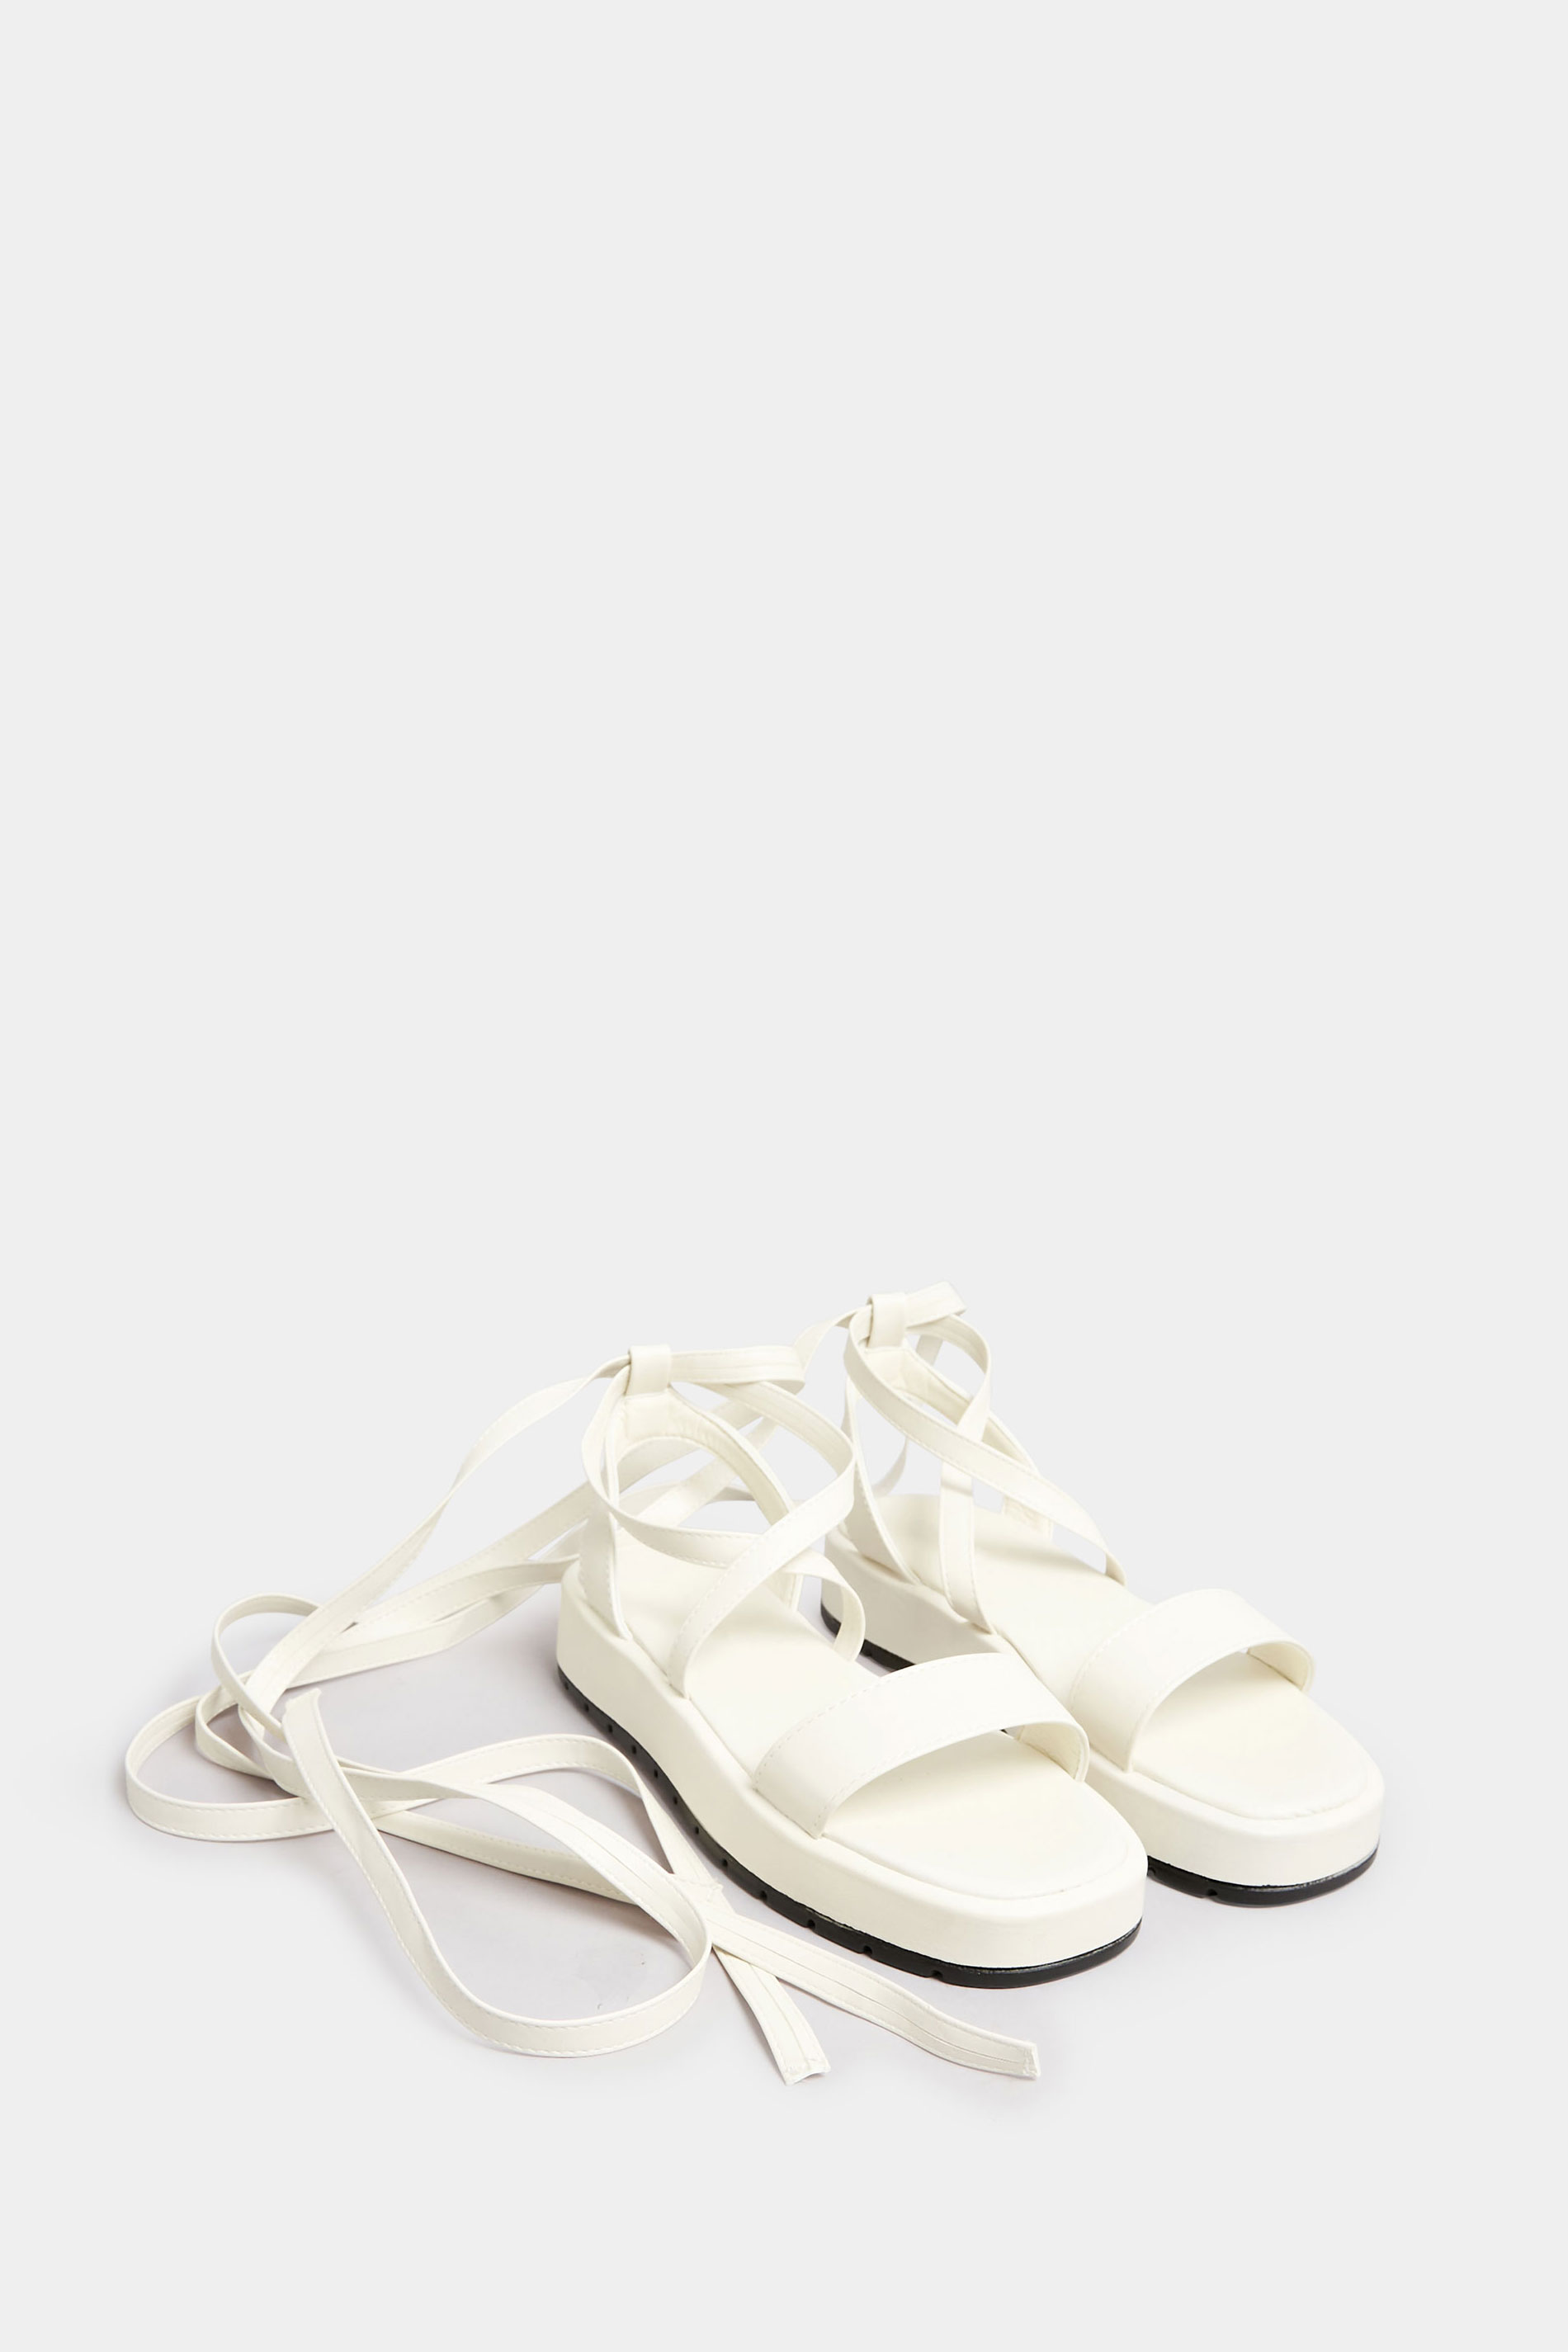 PixieGirl White Ankle Tie Flatform Sandals In Standard Fit | PixieGirl 2